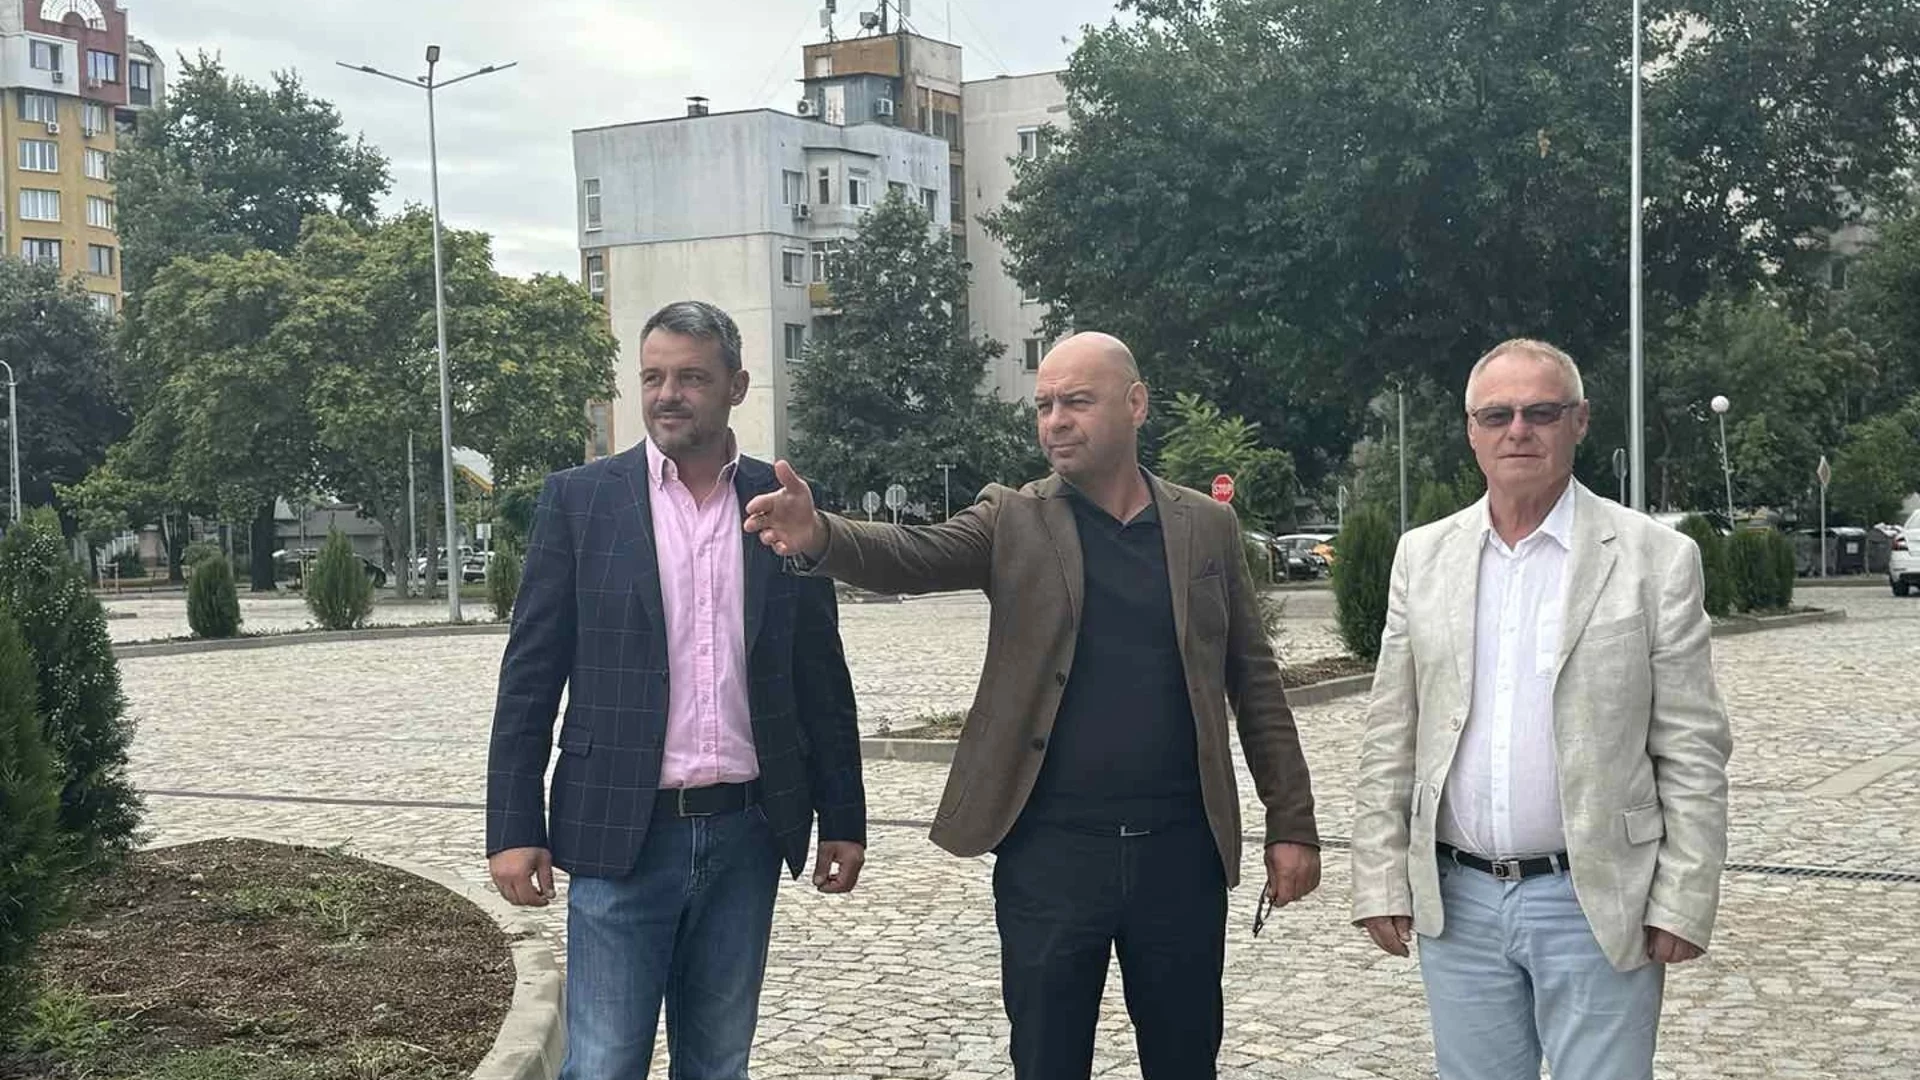 Откриха нов паркинг със 139 места в центъра на Пловдив